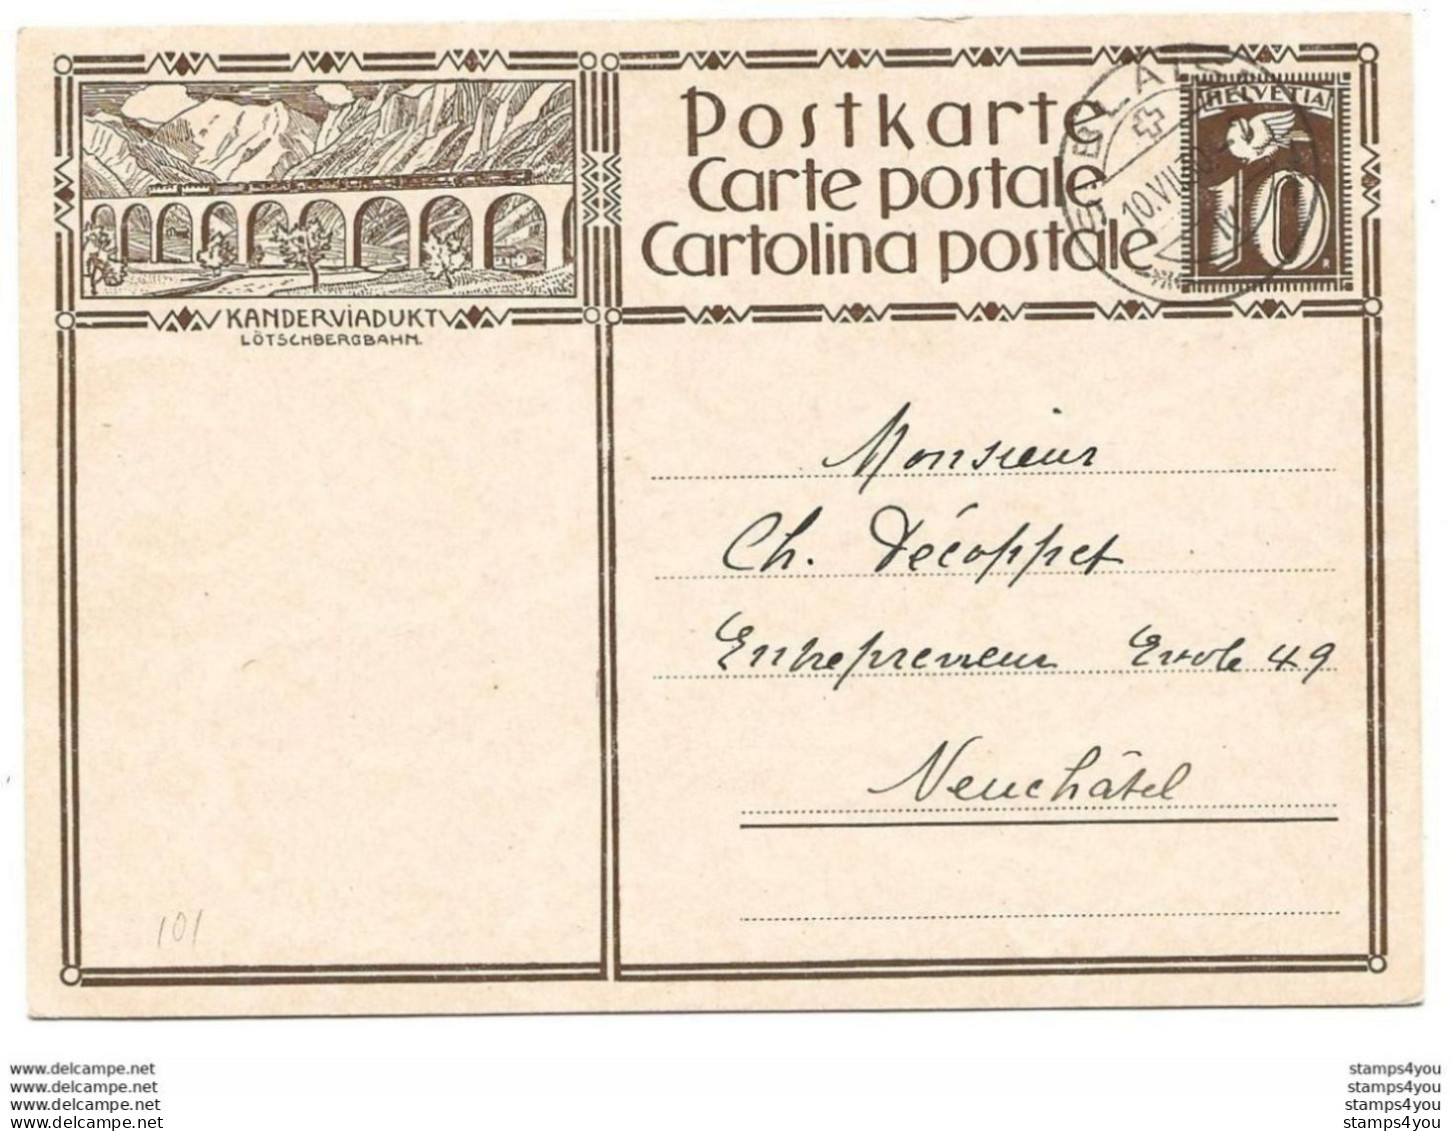 283 - 54 - Entier Postal Avec Illustration "Kanderviadukt" Cachet à Date 1930 - Entiers Postaux